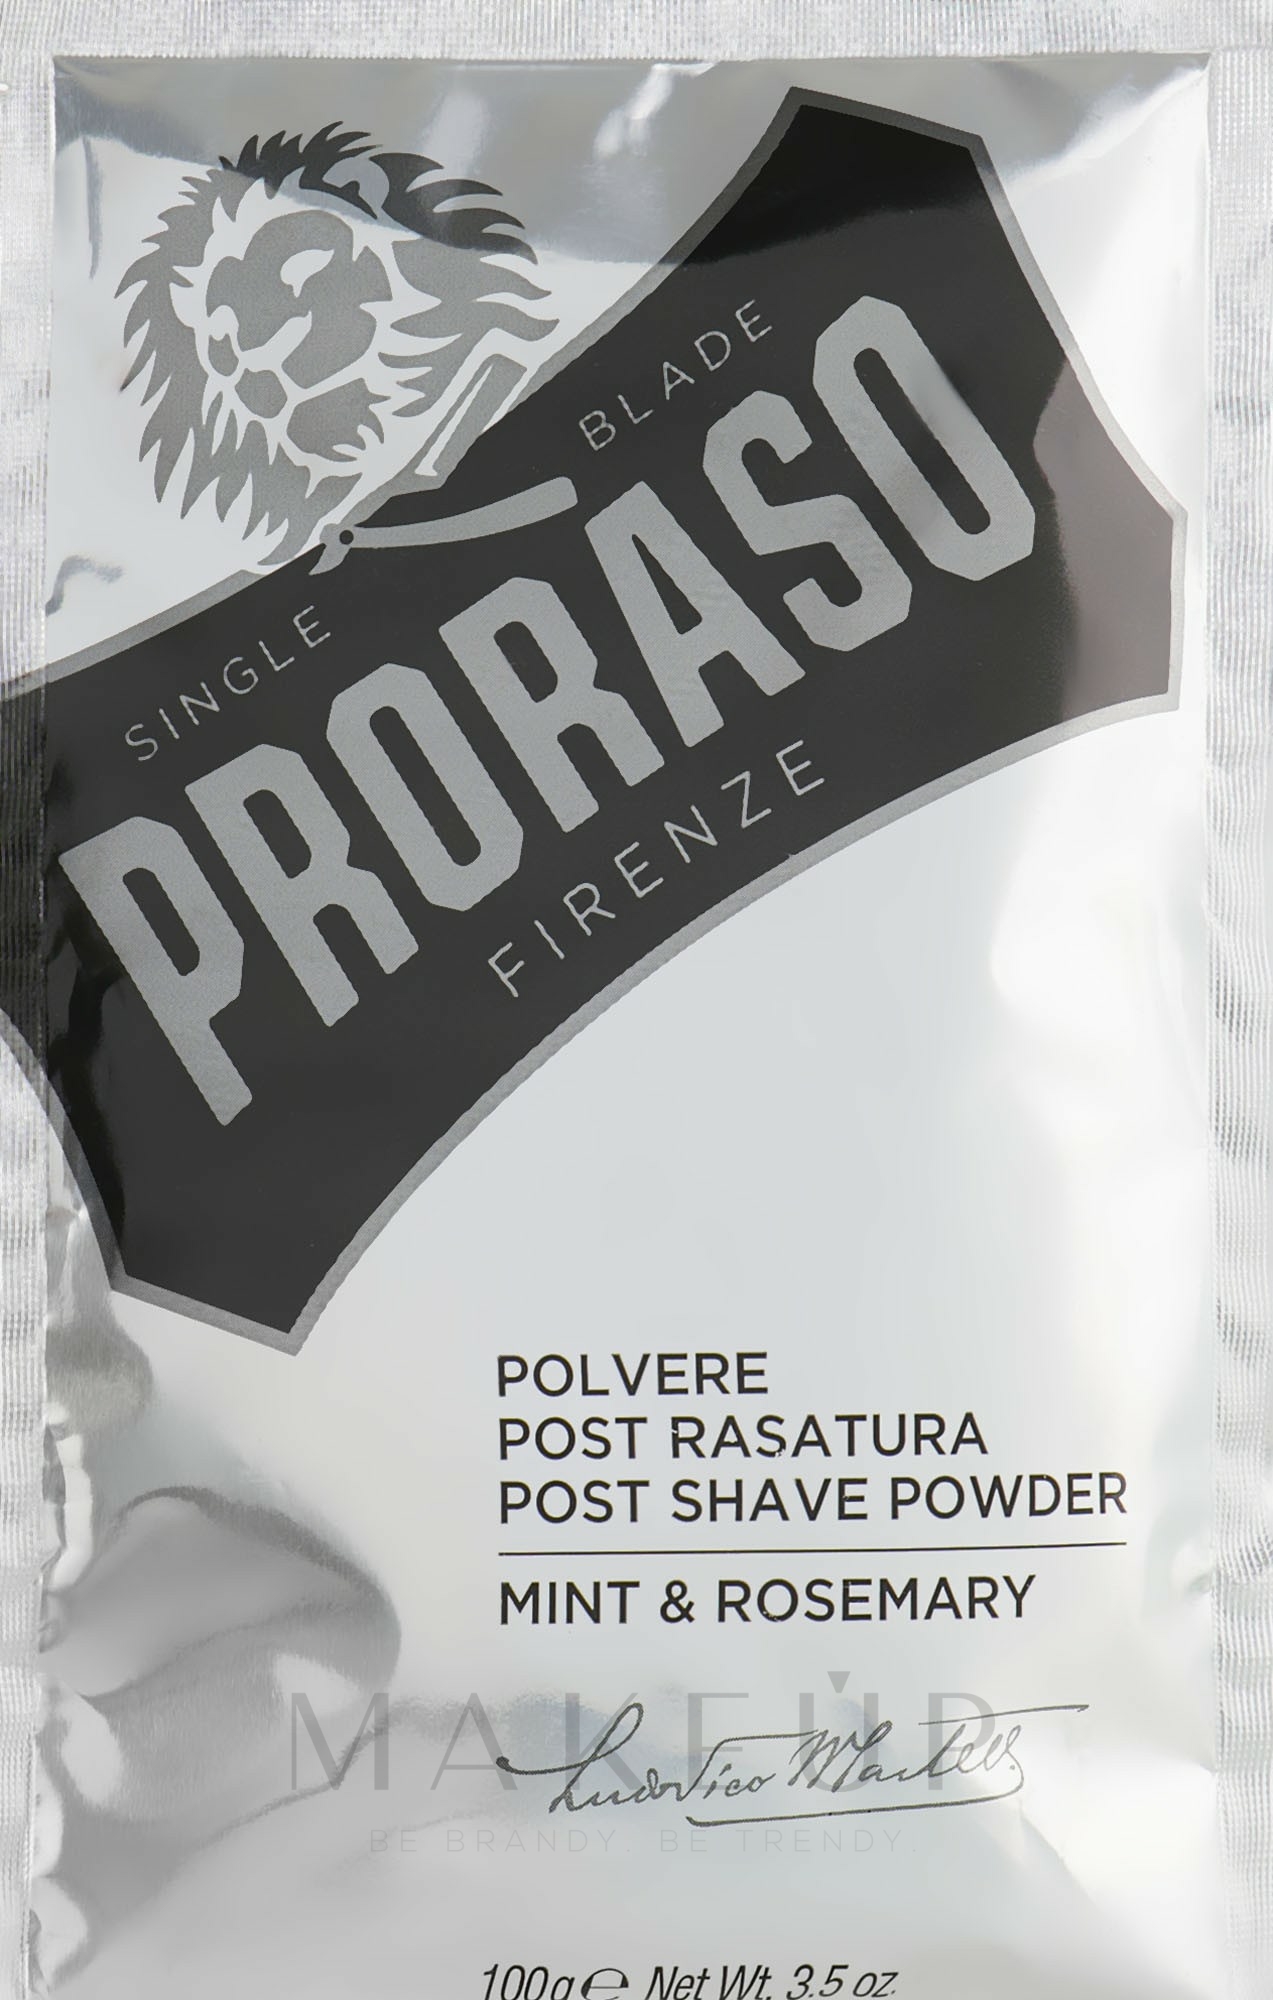 After Shave Puder mit Minze und Rosmarin - Post Shave Powder Mint & Rosemary — Bild 100 g